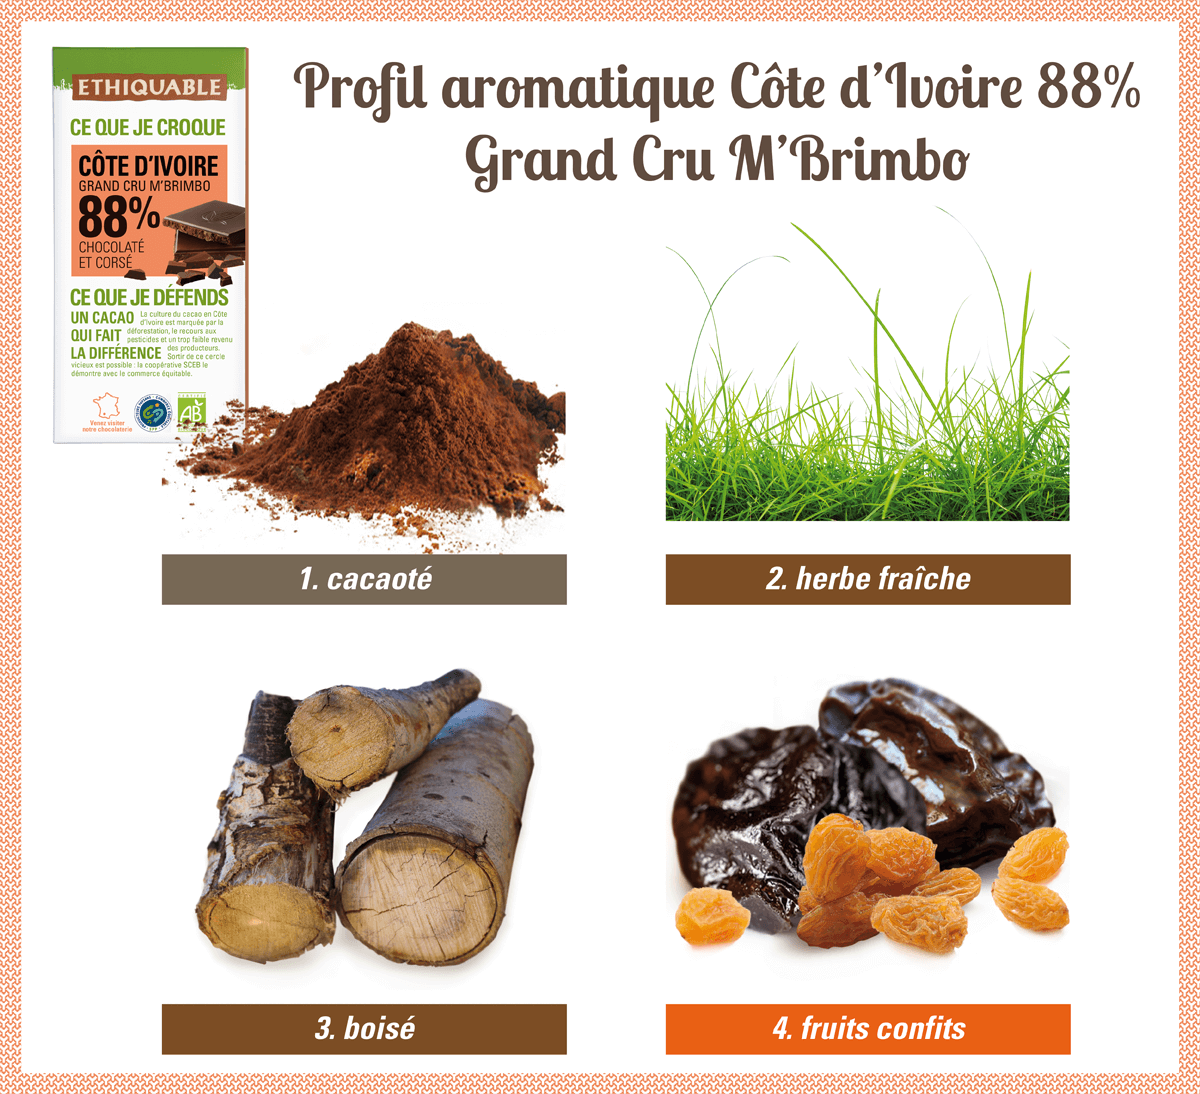 Profil aromatique dhocolat noir 88% de Côte d'Ivoire Grand cru M'Brimbo bio et équitable